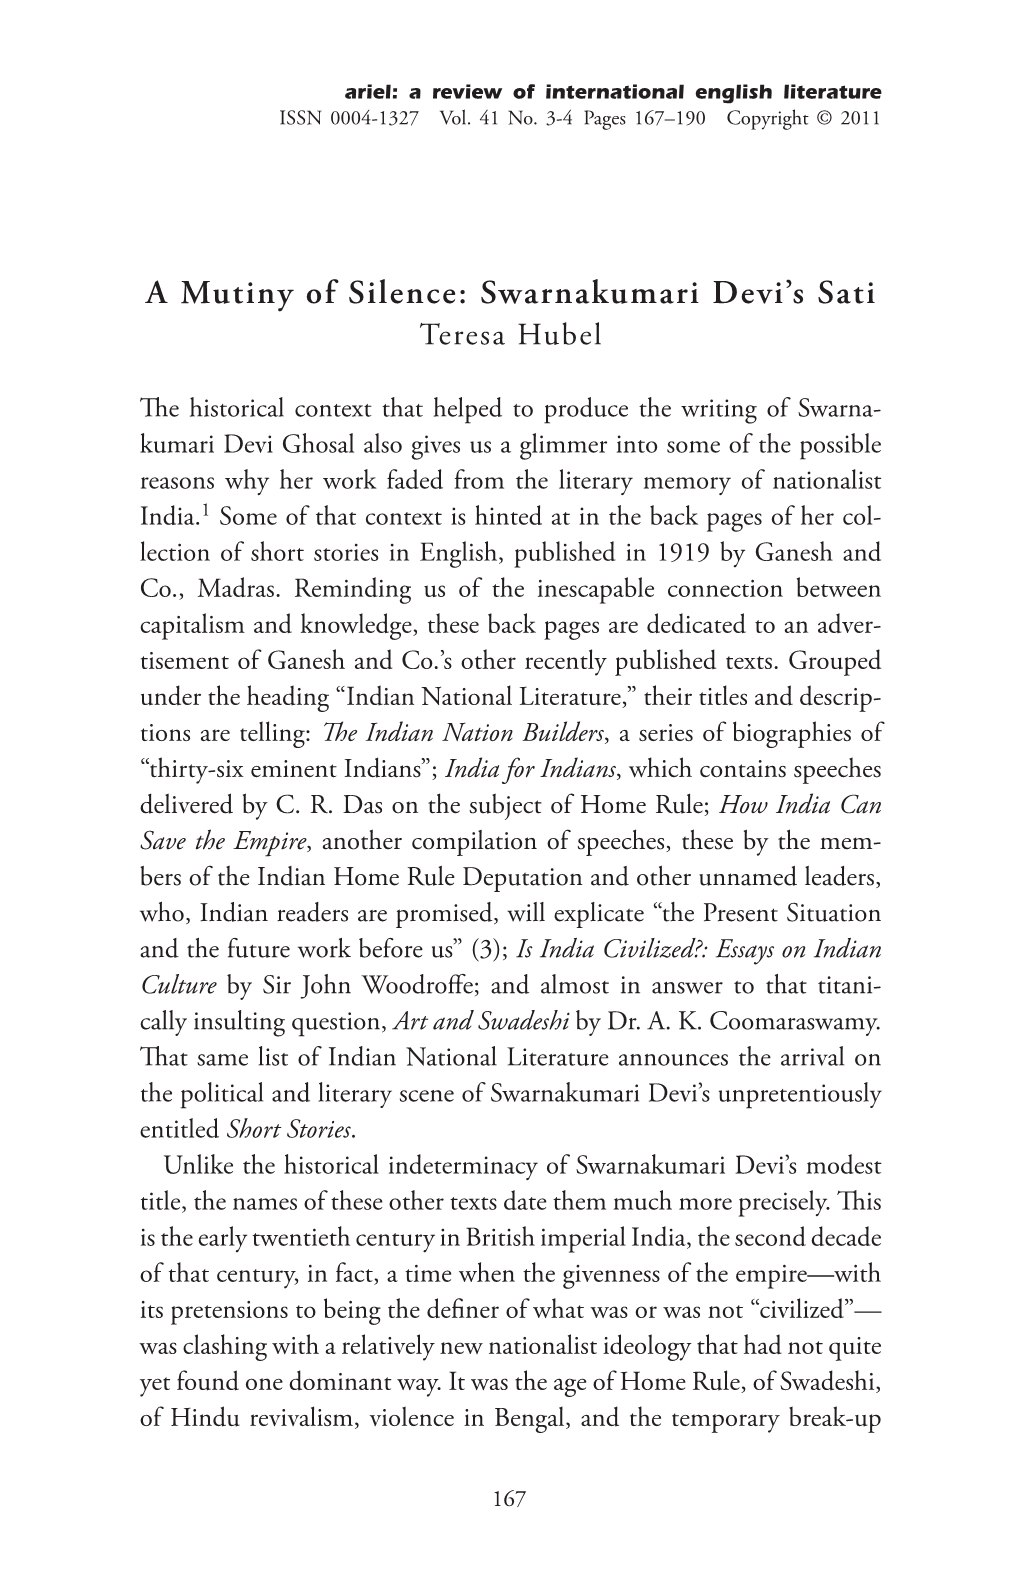 A Mutiny of Silence: Swarnakumari Devi's Sati